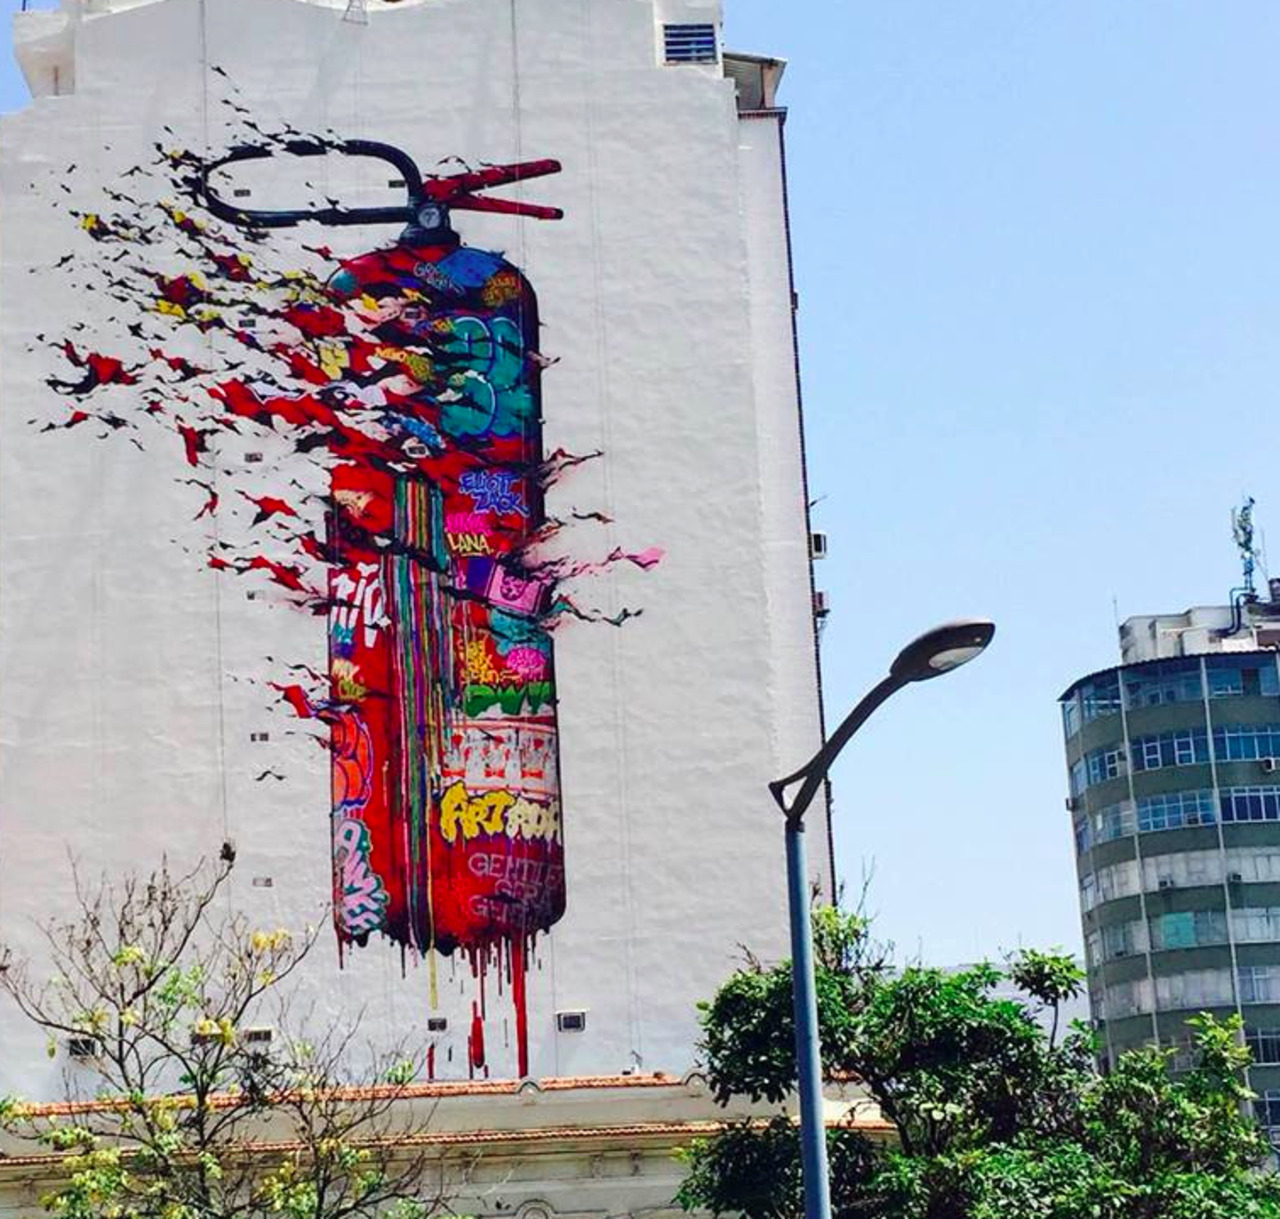 #Streetart by Brusk #riodejaneiro #Brazil #art #mural 
http://plus.google.com/u/0/communitie… http://t.co/vgCRAN8wk8